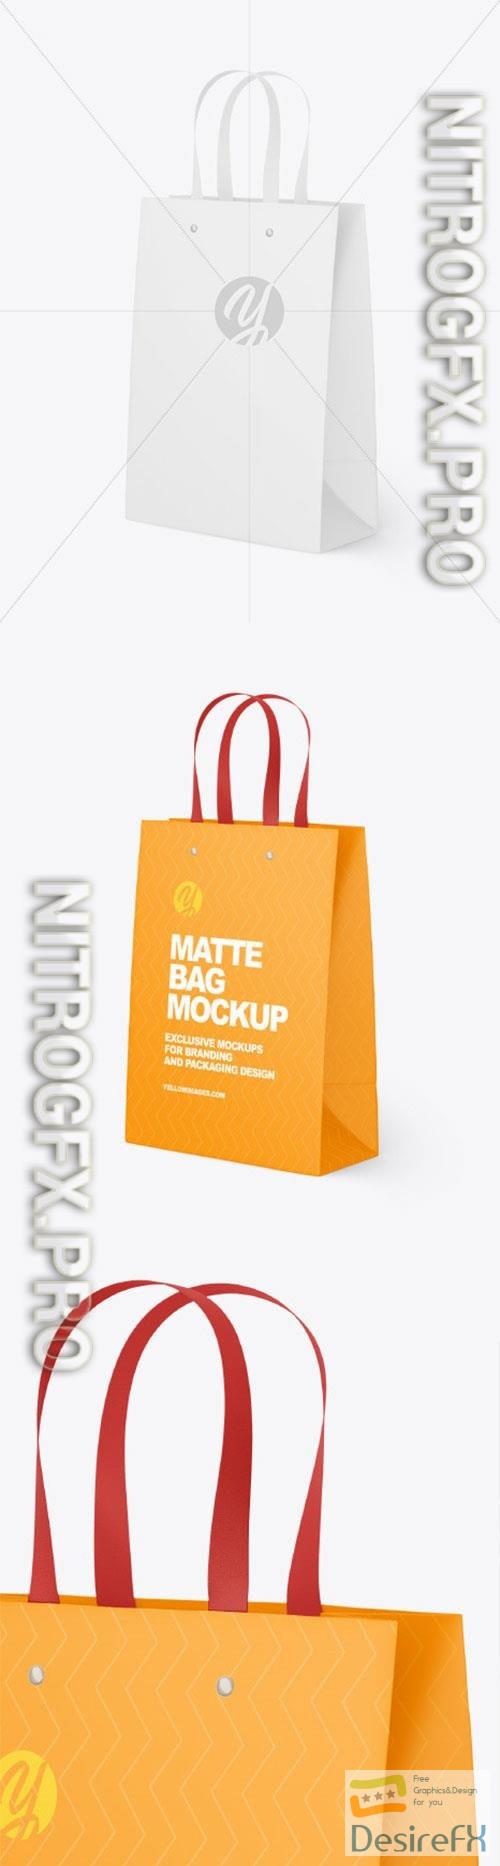 Matte Paper Bag Mockup 86559